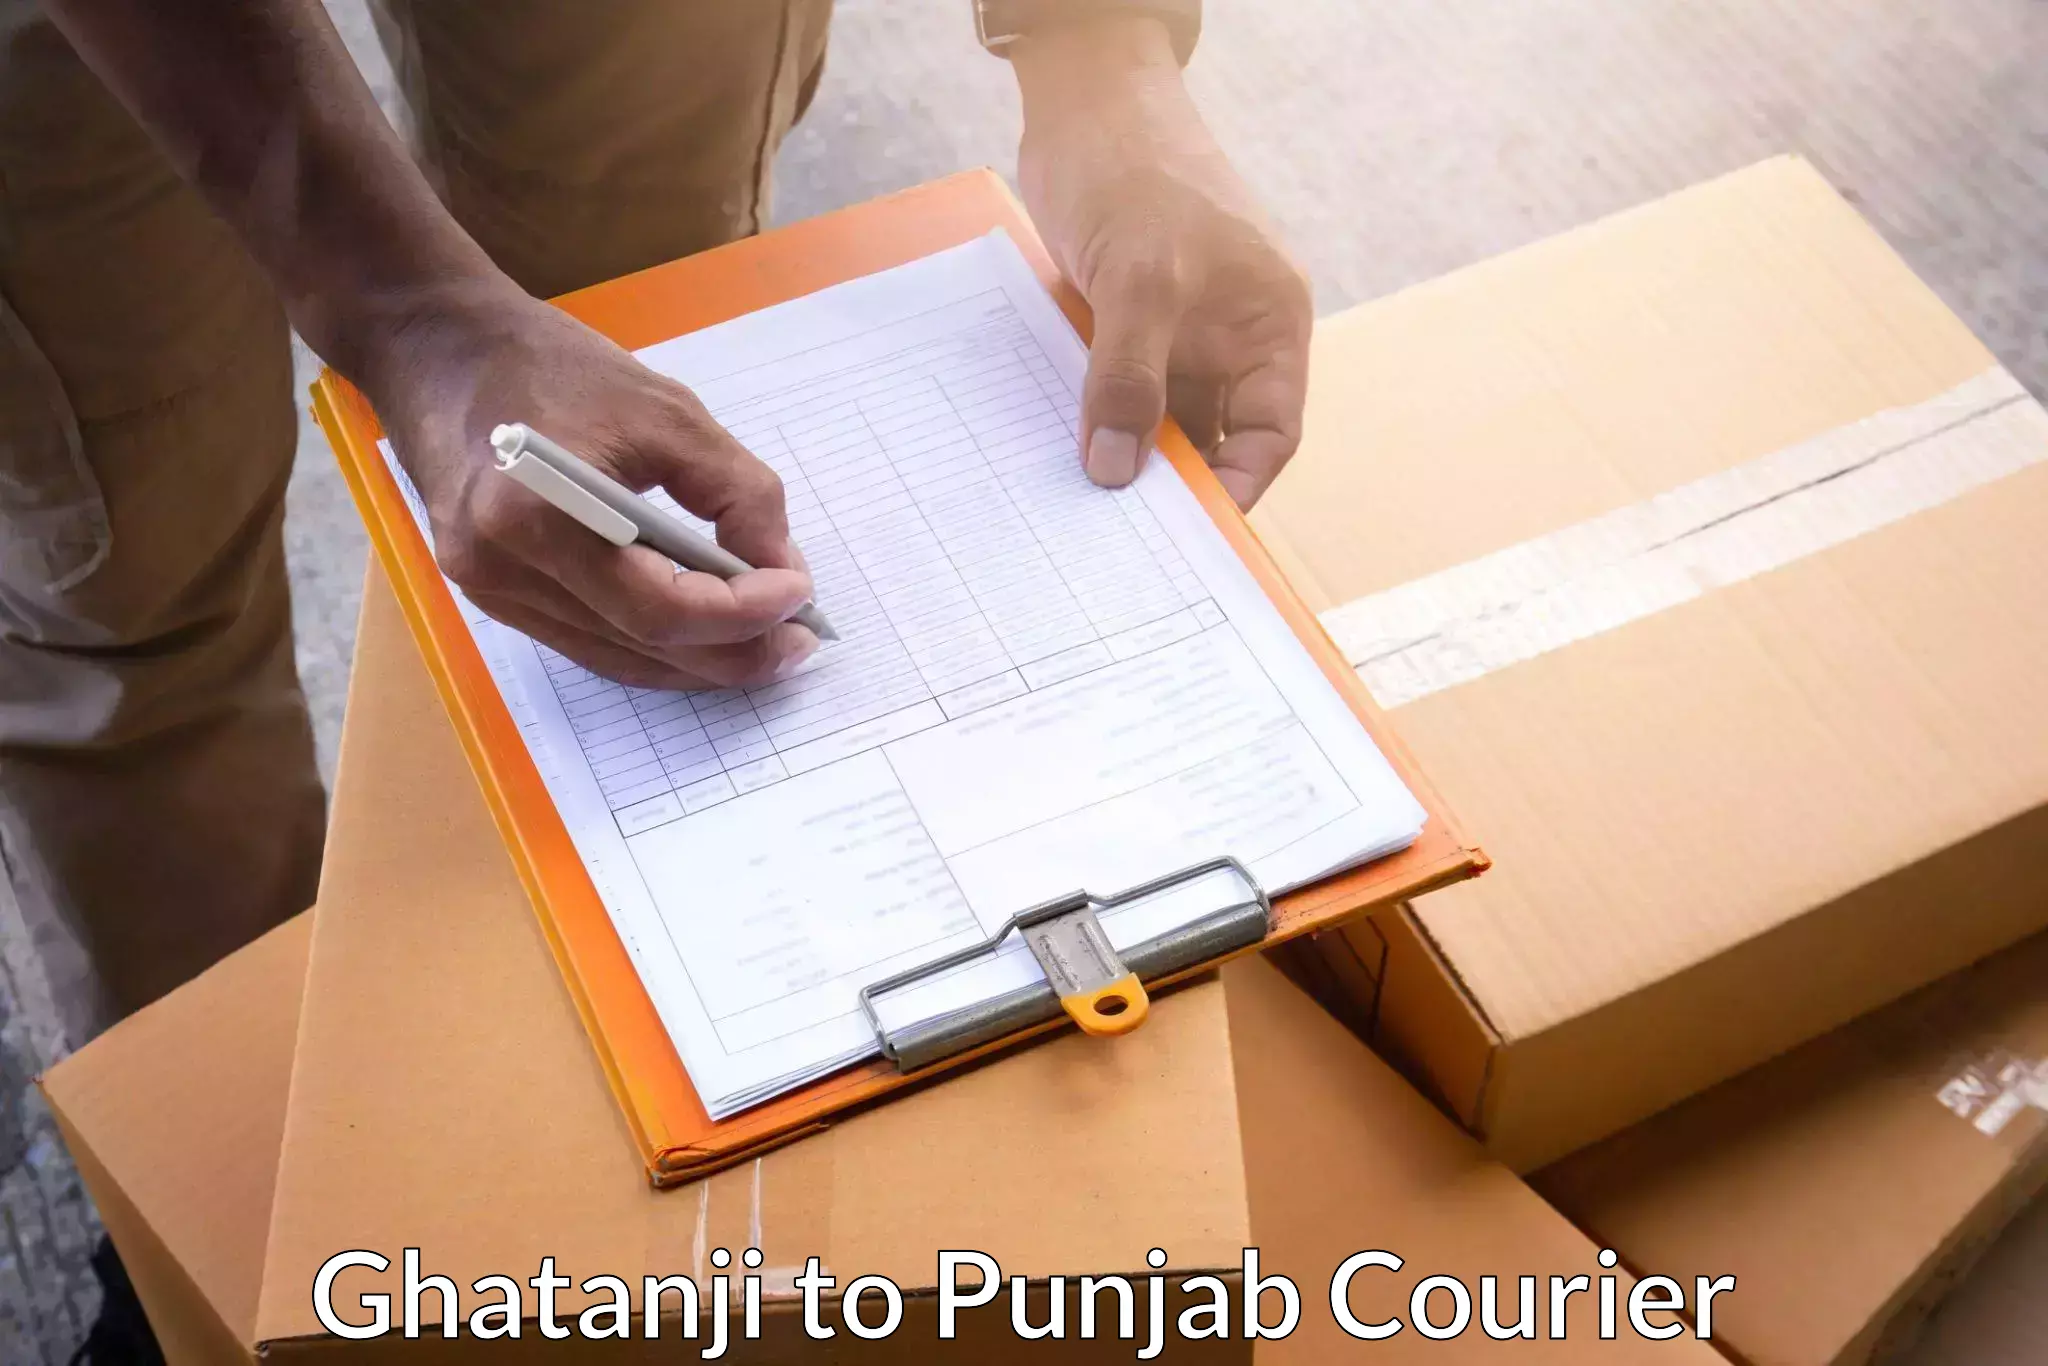 Reliable logistics providers Ghatanji to Punjab